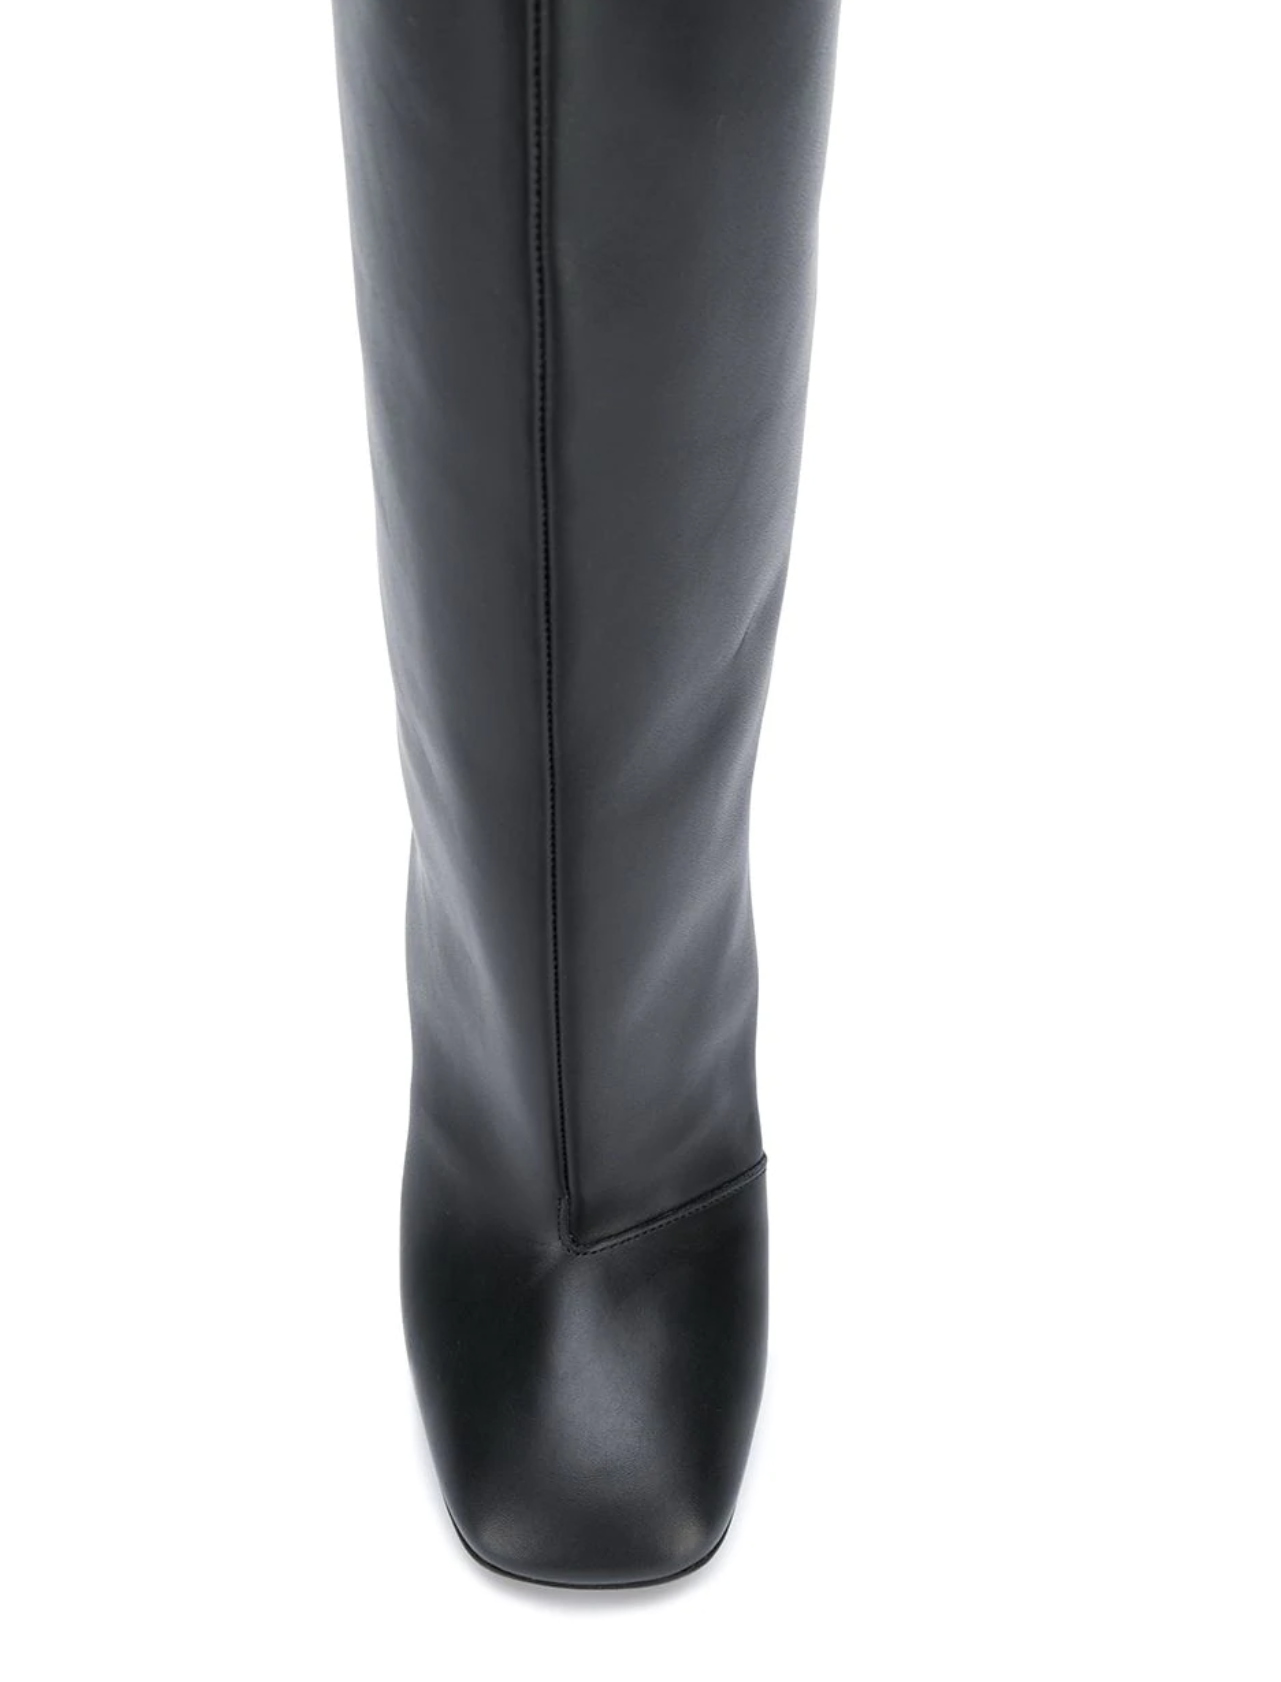 Aldo Size 6 1/2 Women's Ankle Boots Black 3 Inch Heels Slip On | eBay